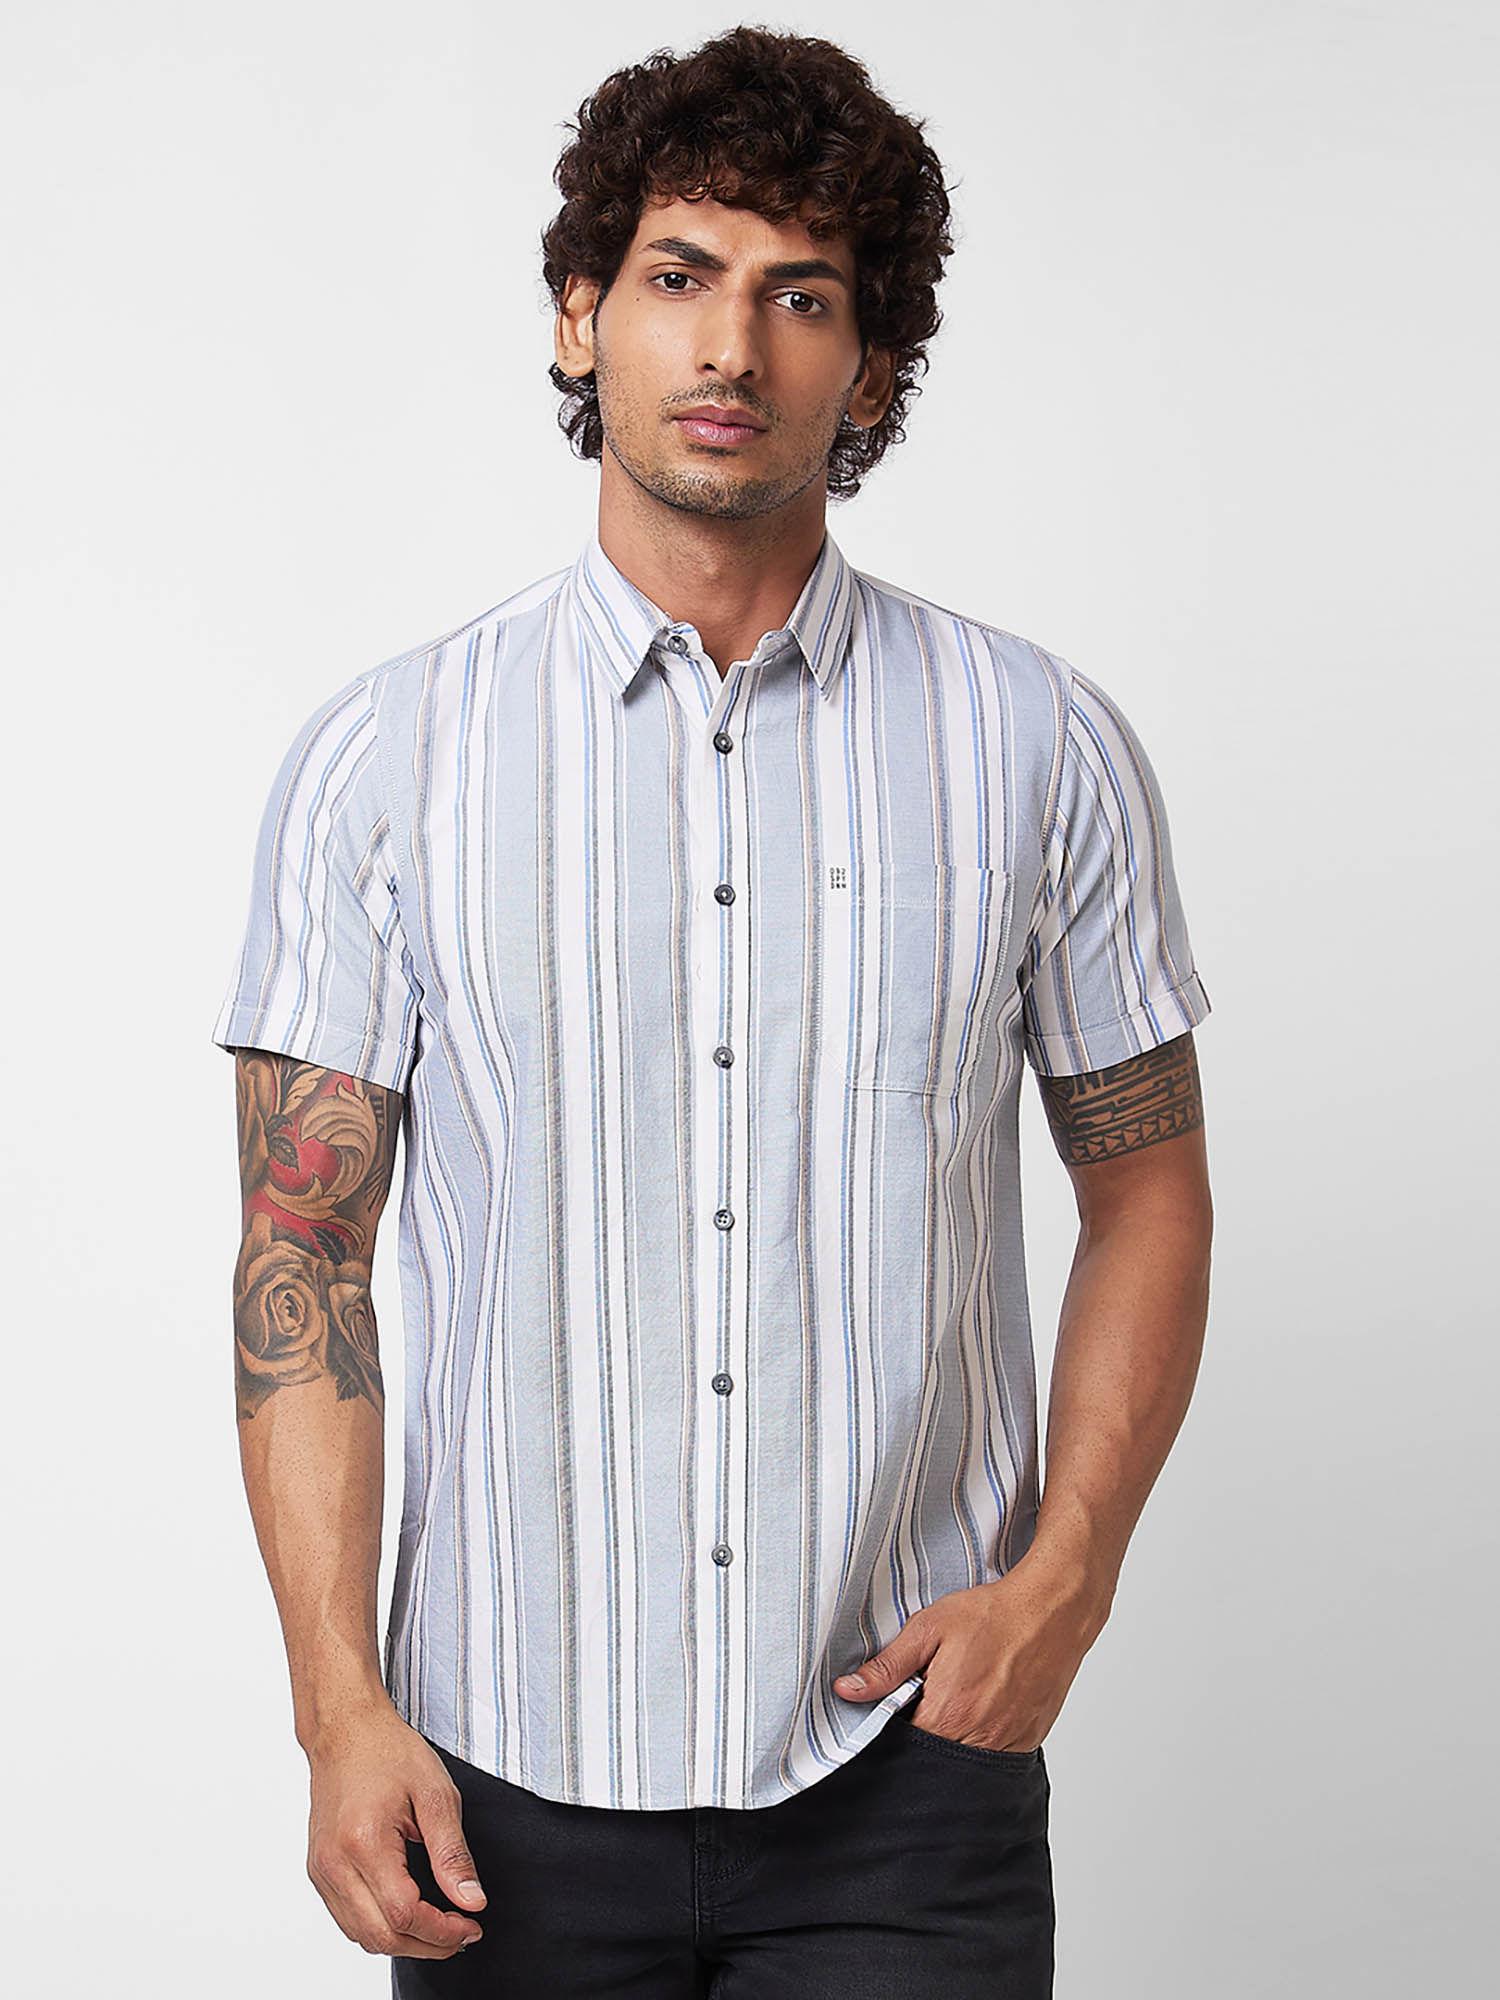 multi stripes half sleeve shirt for men